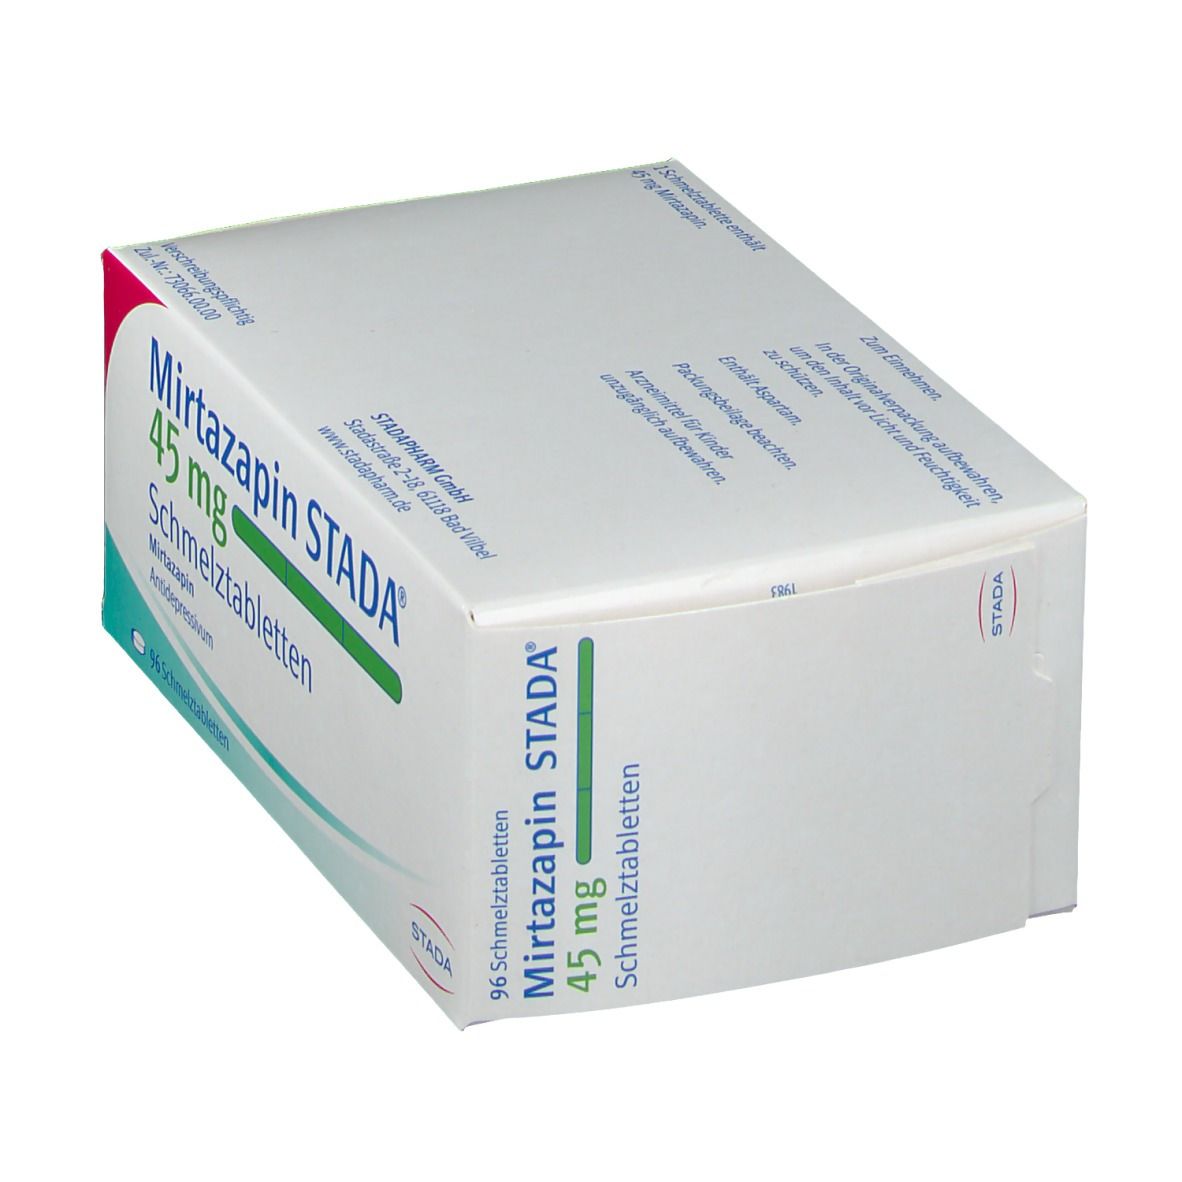 Mirtazapin STADA® 45 mg Schmelztabletten